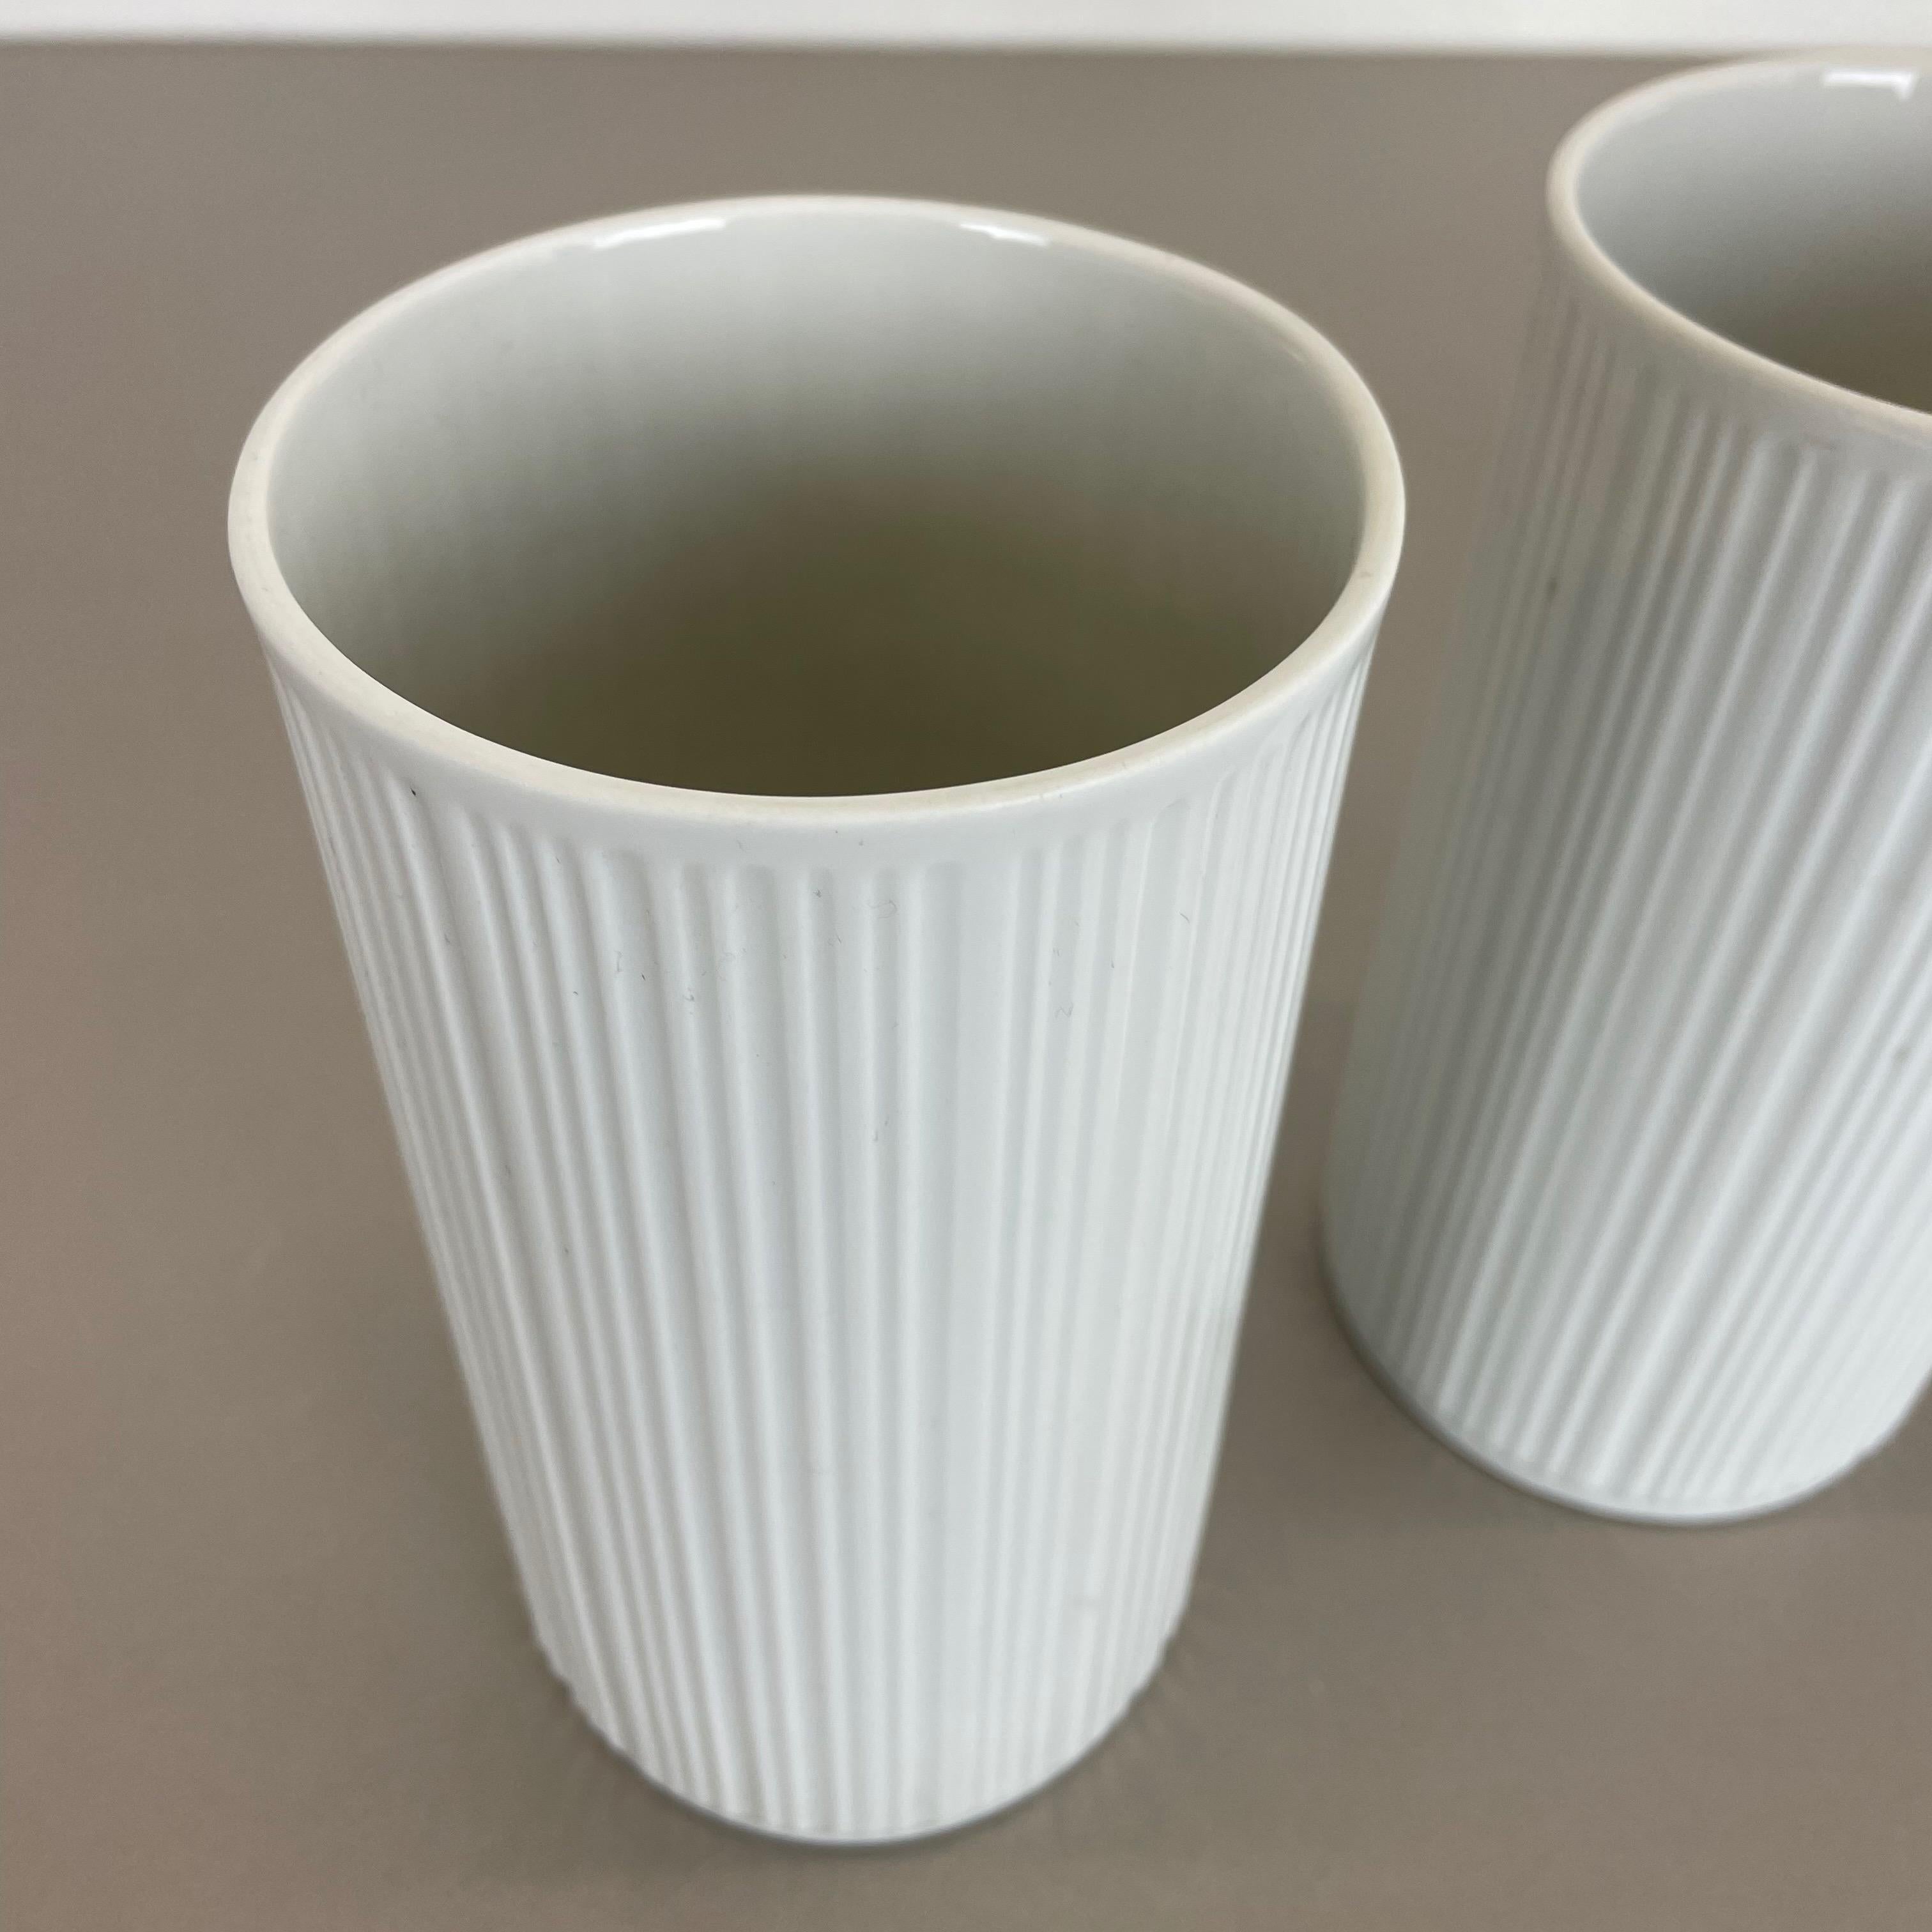 Set of 3 OP Art Porcelain Vases by Melitta Minden, Germany, 1970s For Sale 1